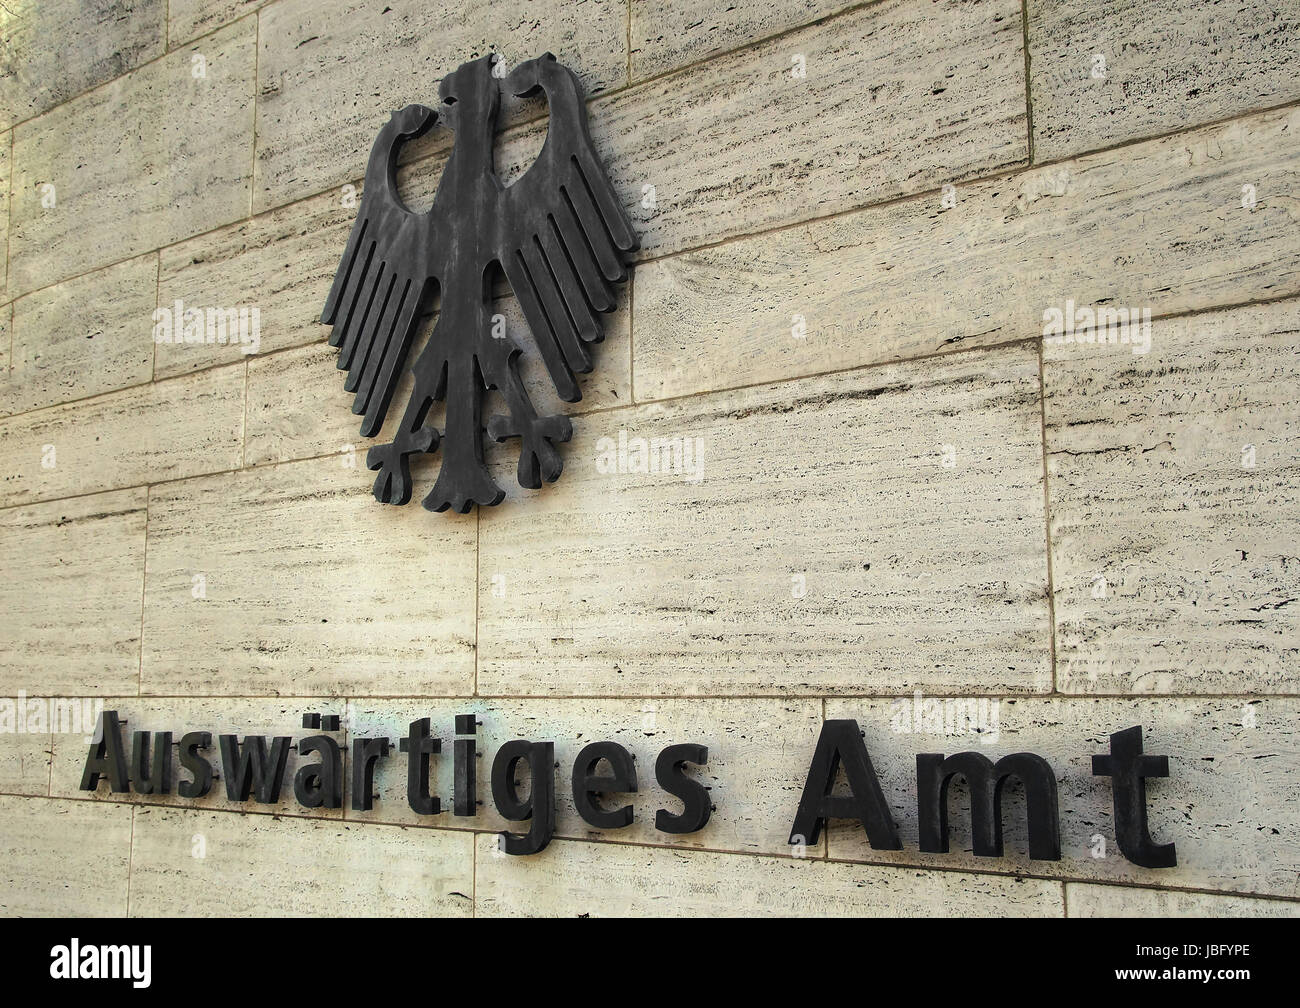 Auswärtiges Amt Deutschland / german ministry of foreign affairs Stock Photo